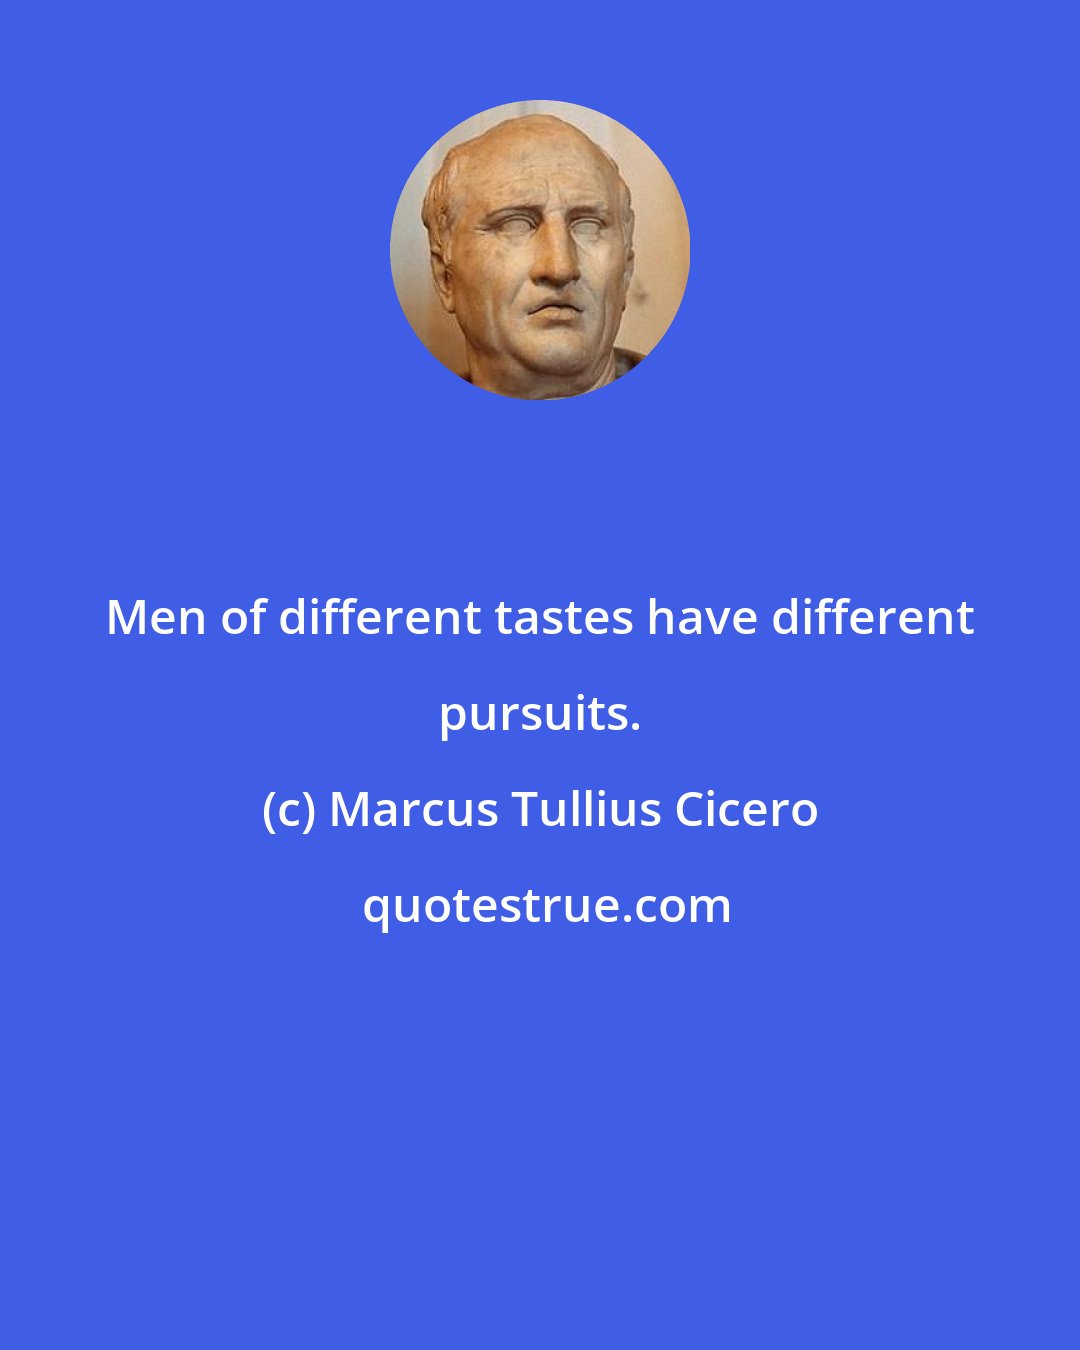 Marcus Tullius Cicero: Men of different tastes have different pursuits.